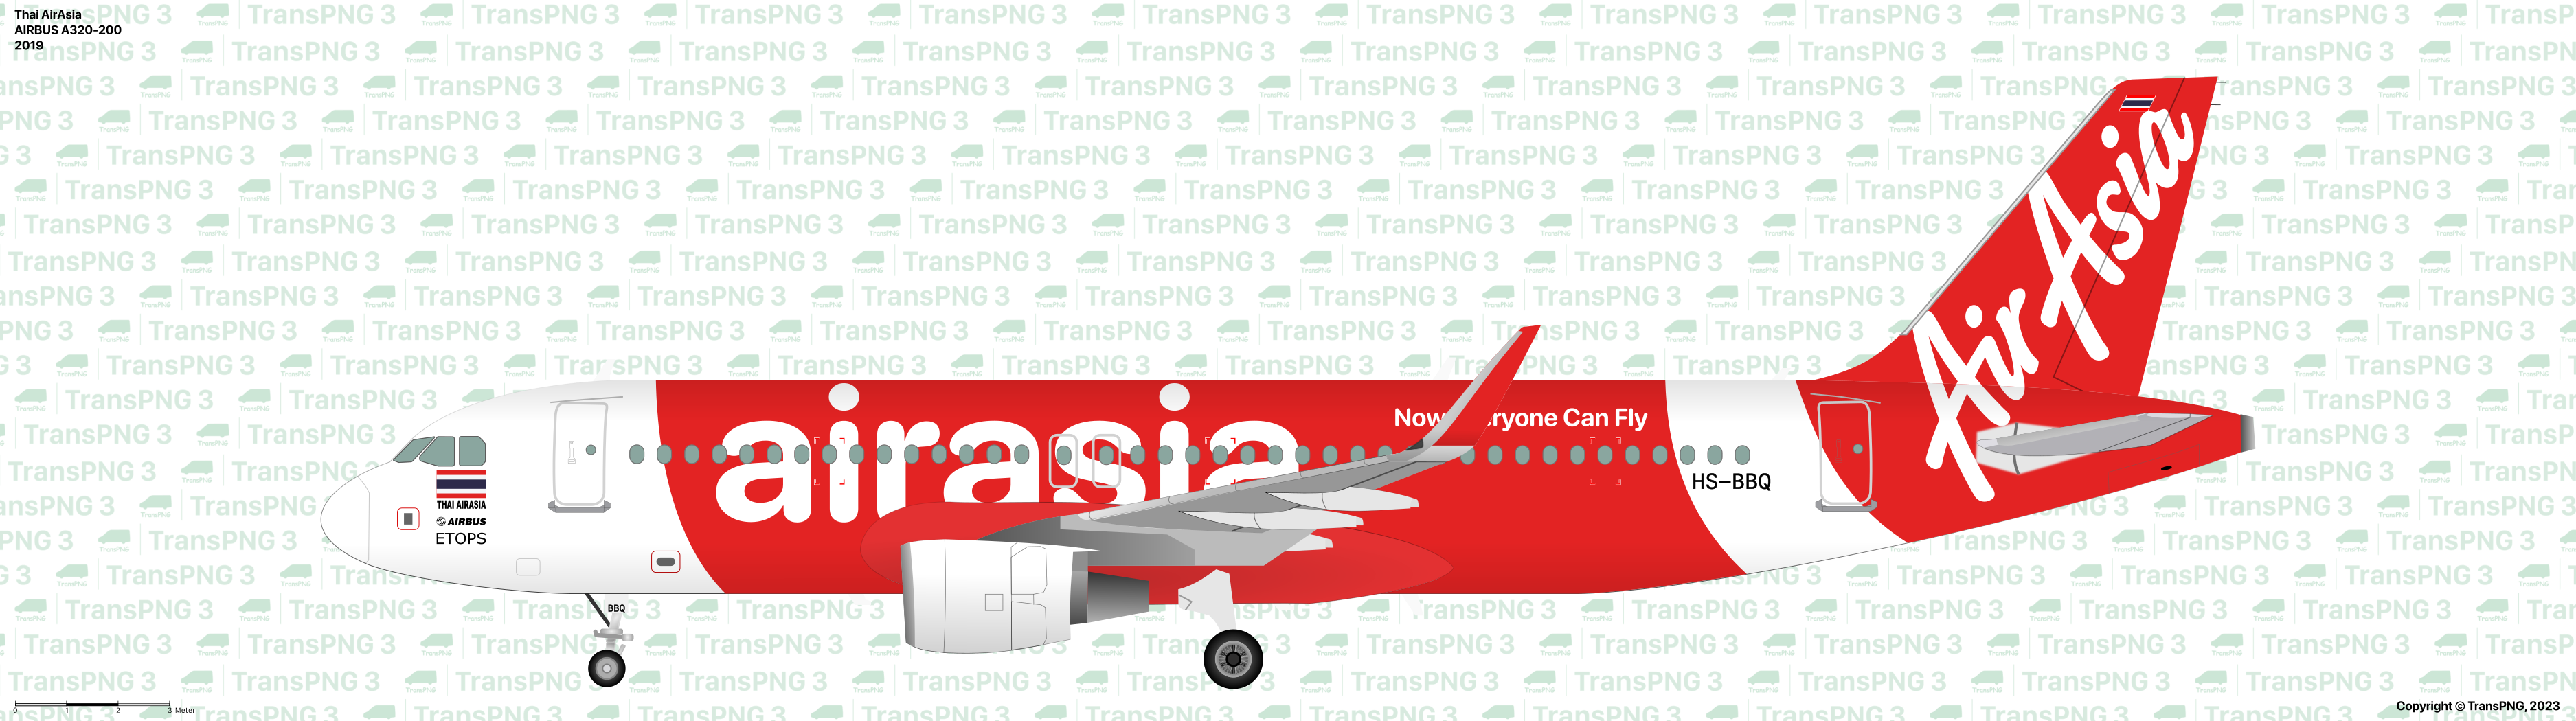 TransPNG.net | 分享世界各地多種交通工具的優秀繪圖 - 客機 53278940943_1f4699a2dd_o